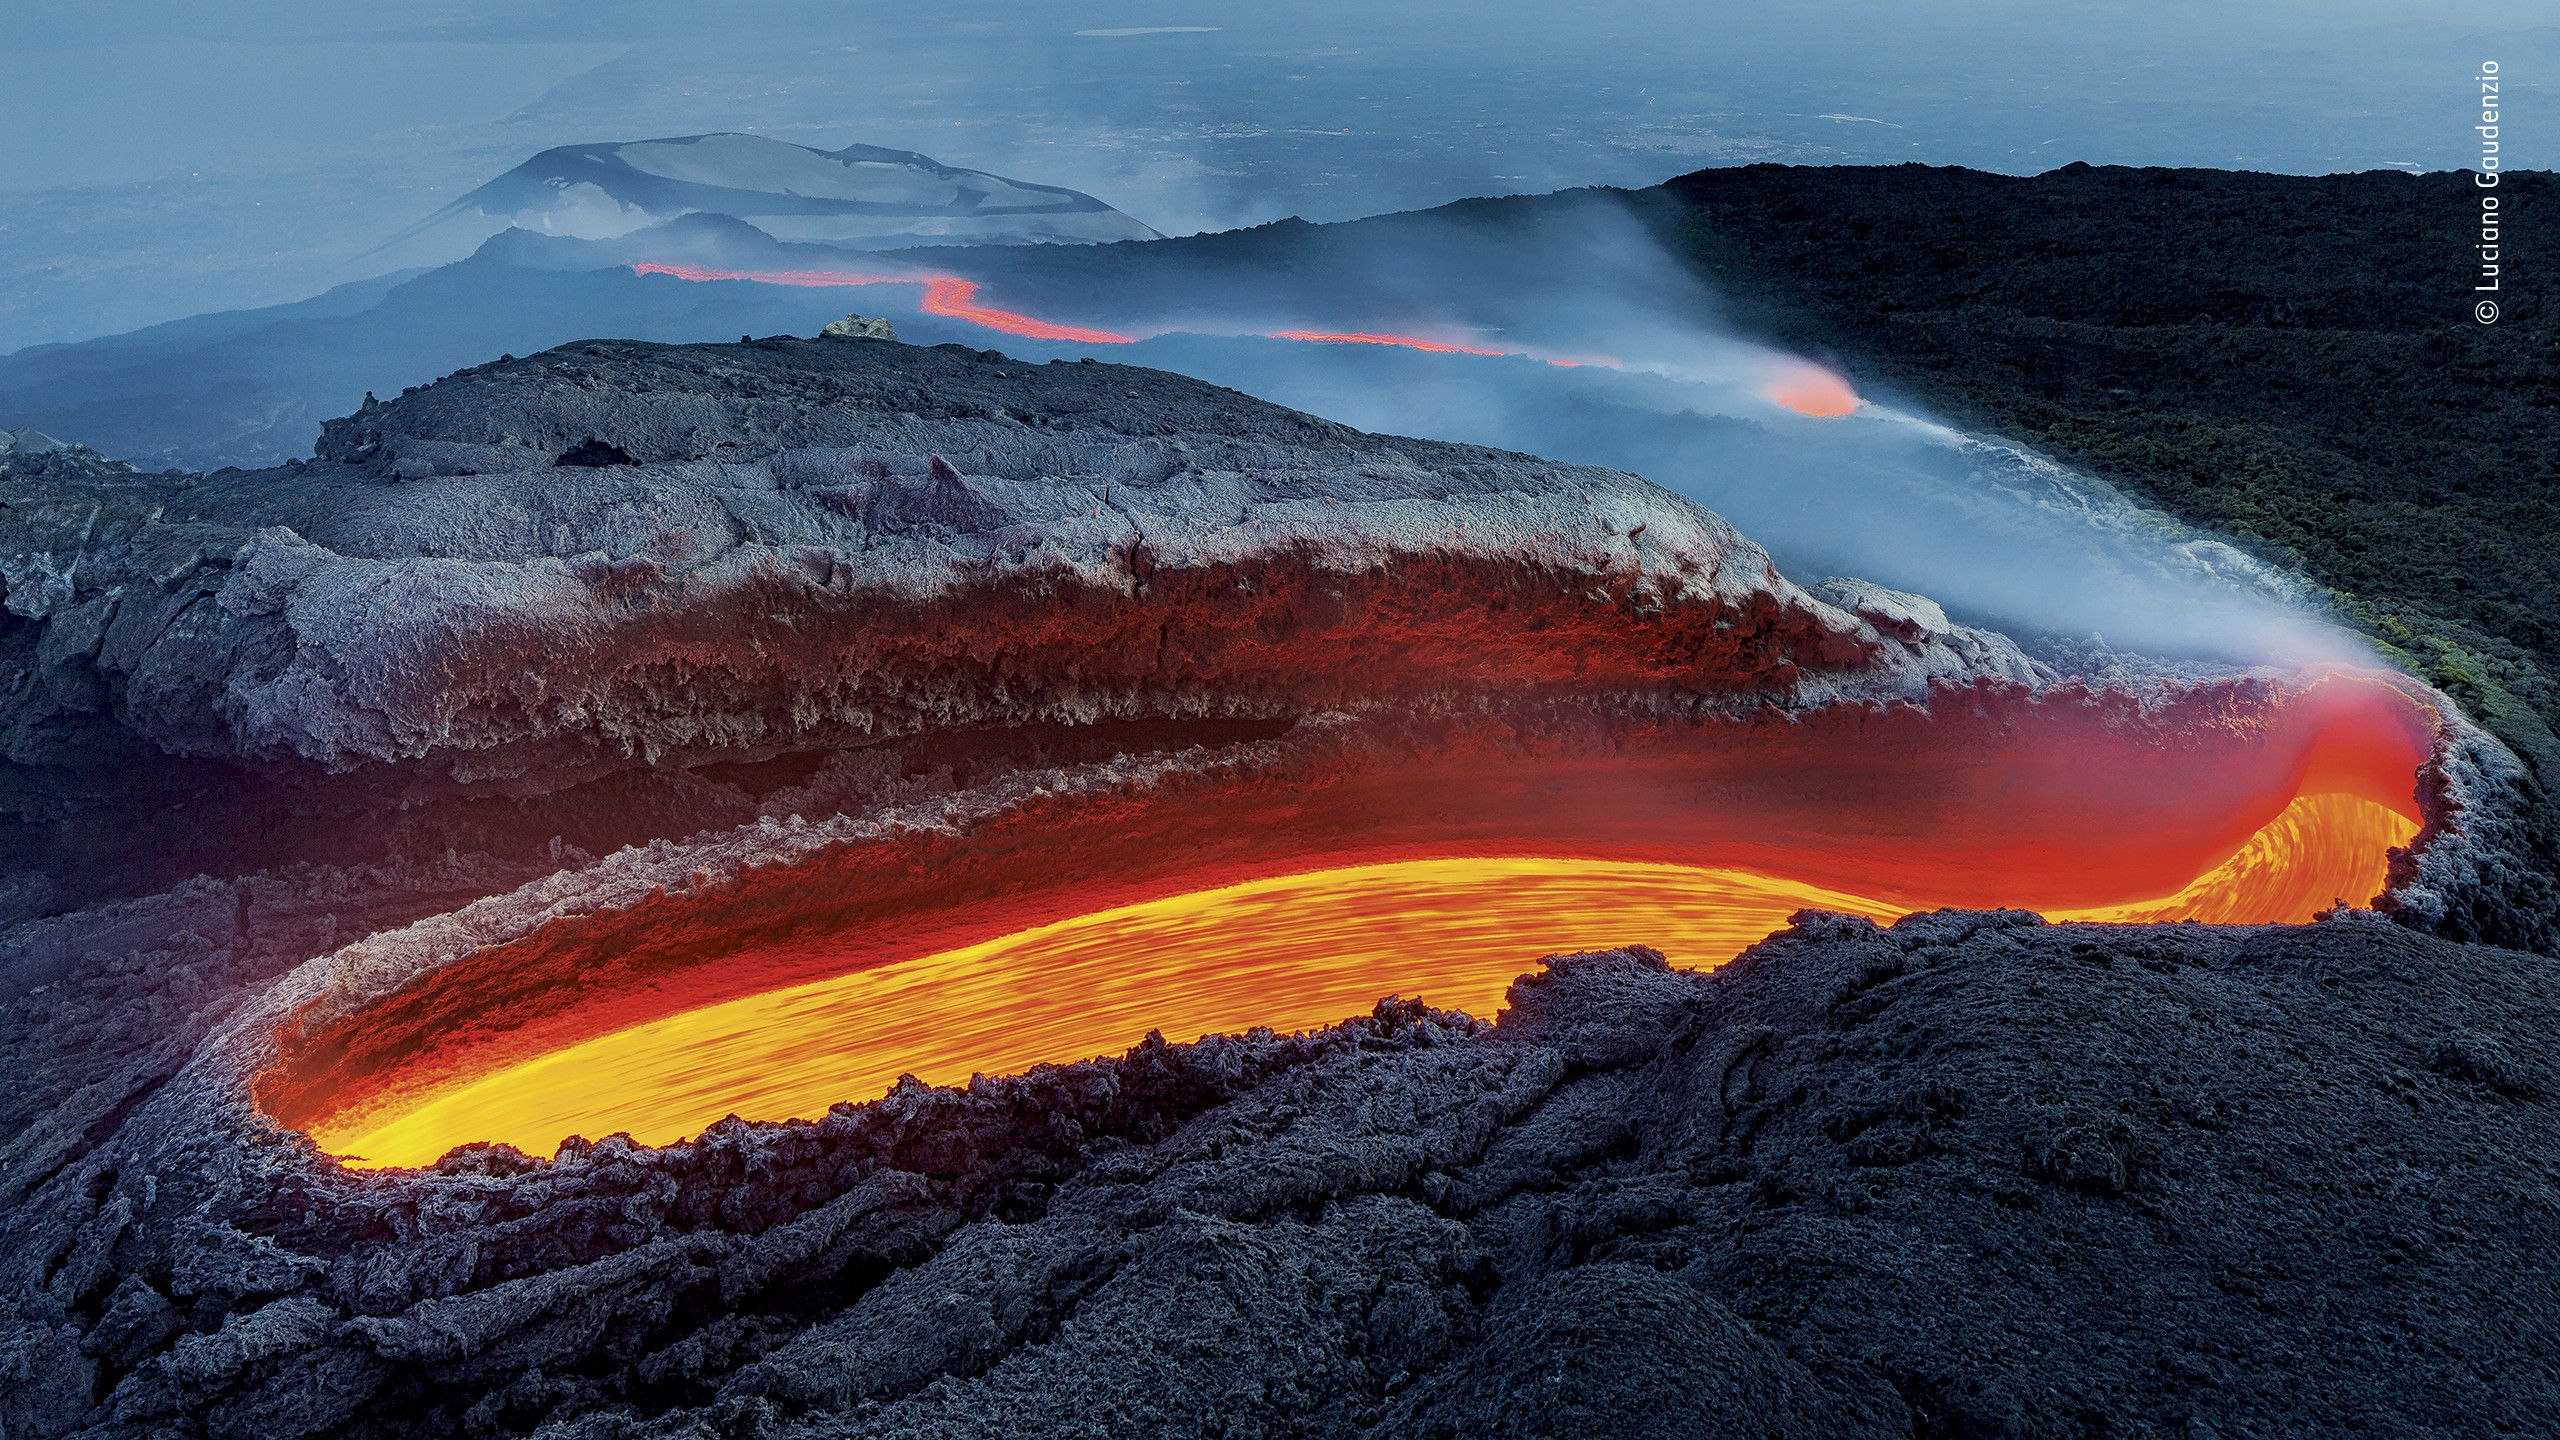 Победитель в категории «Земная среда обитания», 2020. «Огненная река вулкана Этна». Автор Лучано Гауденцио